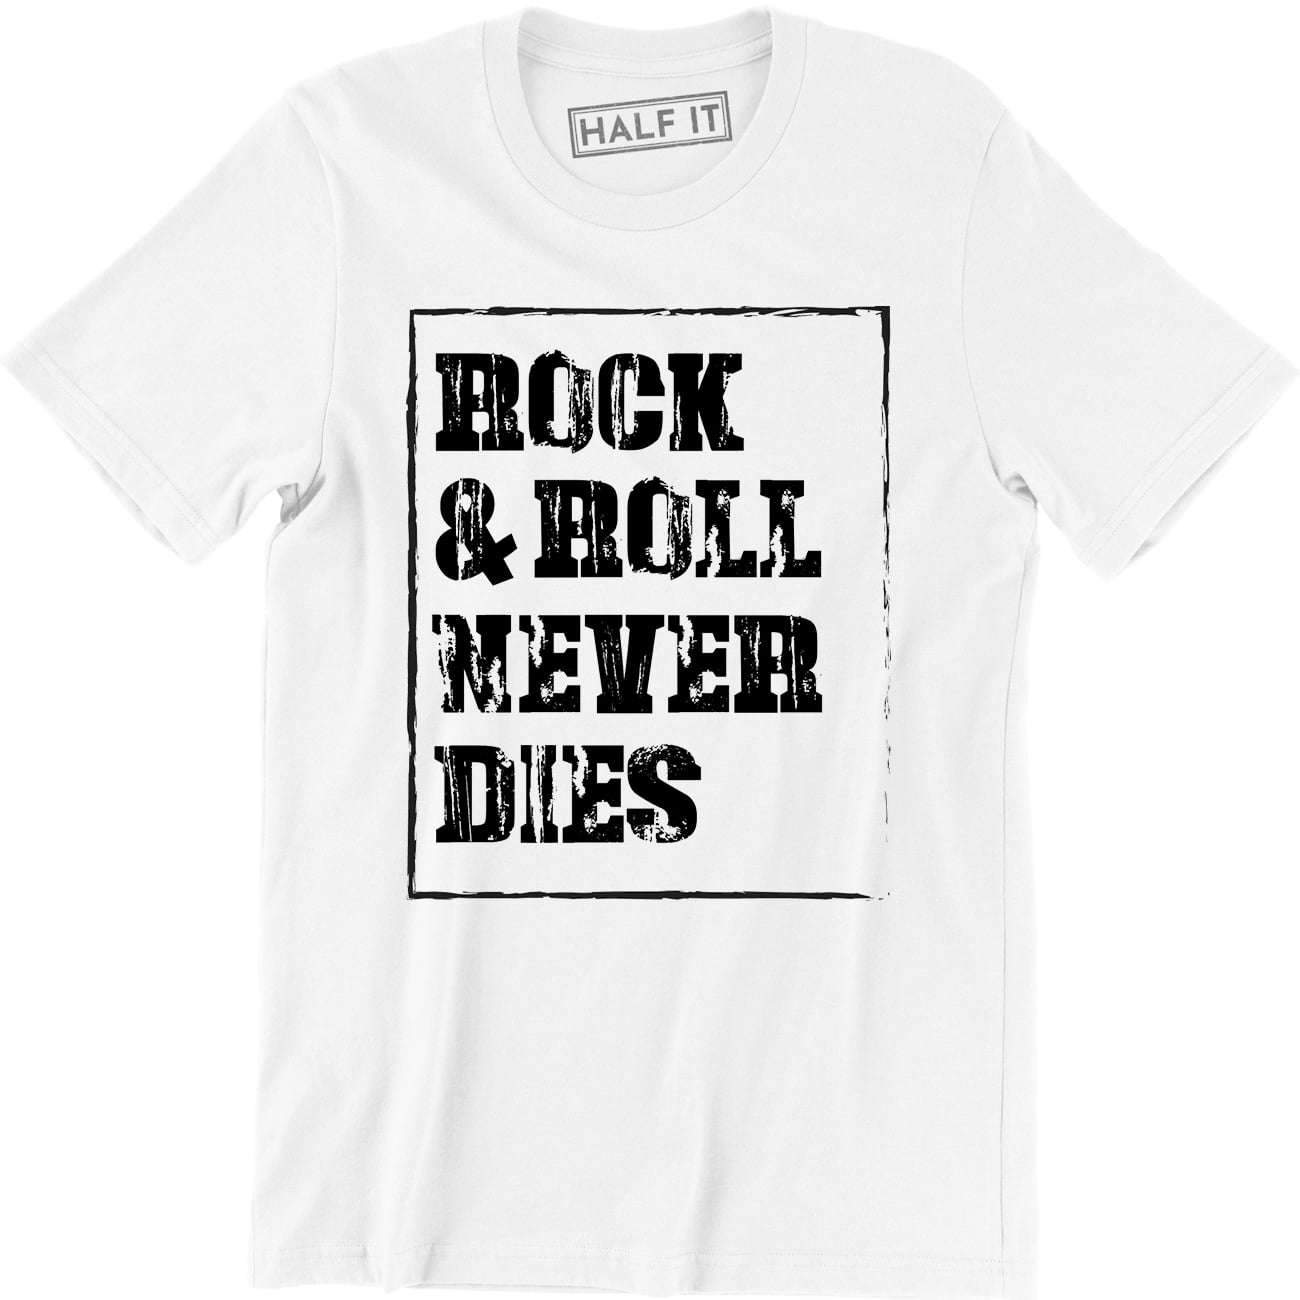 Rock n Roll Never Die 1940s Music Lover Short-Sleeve Unisex T-Shirt.